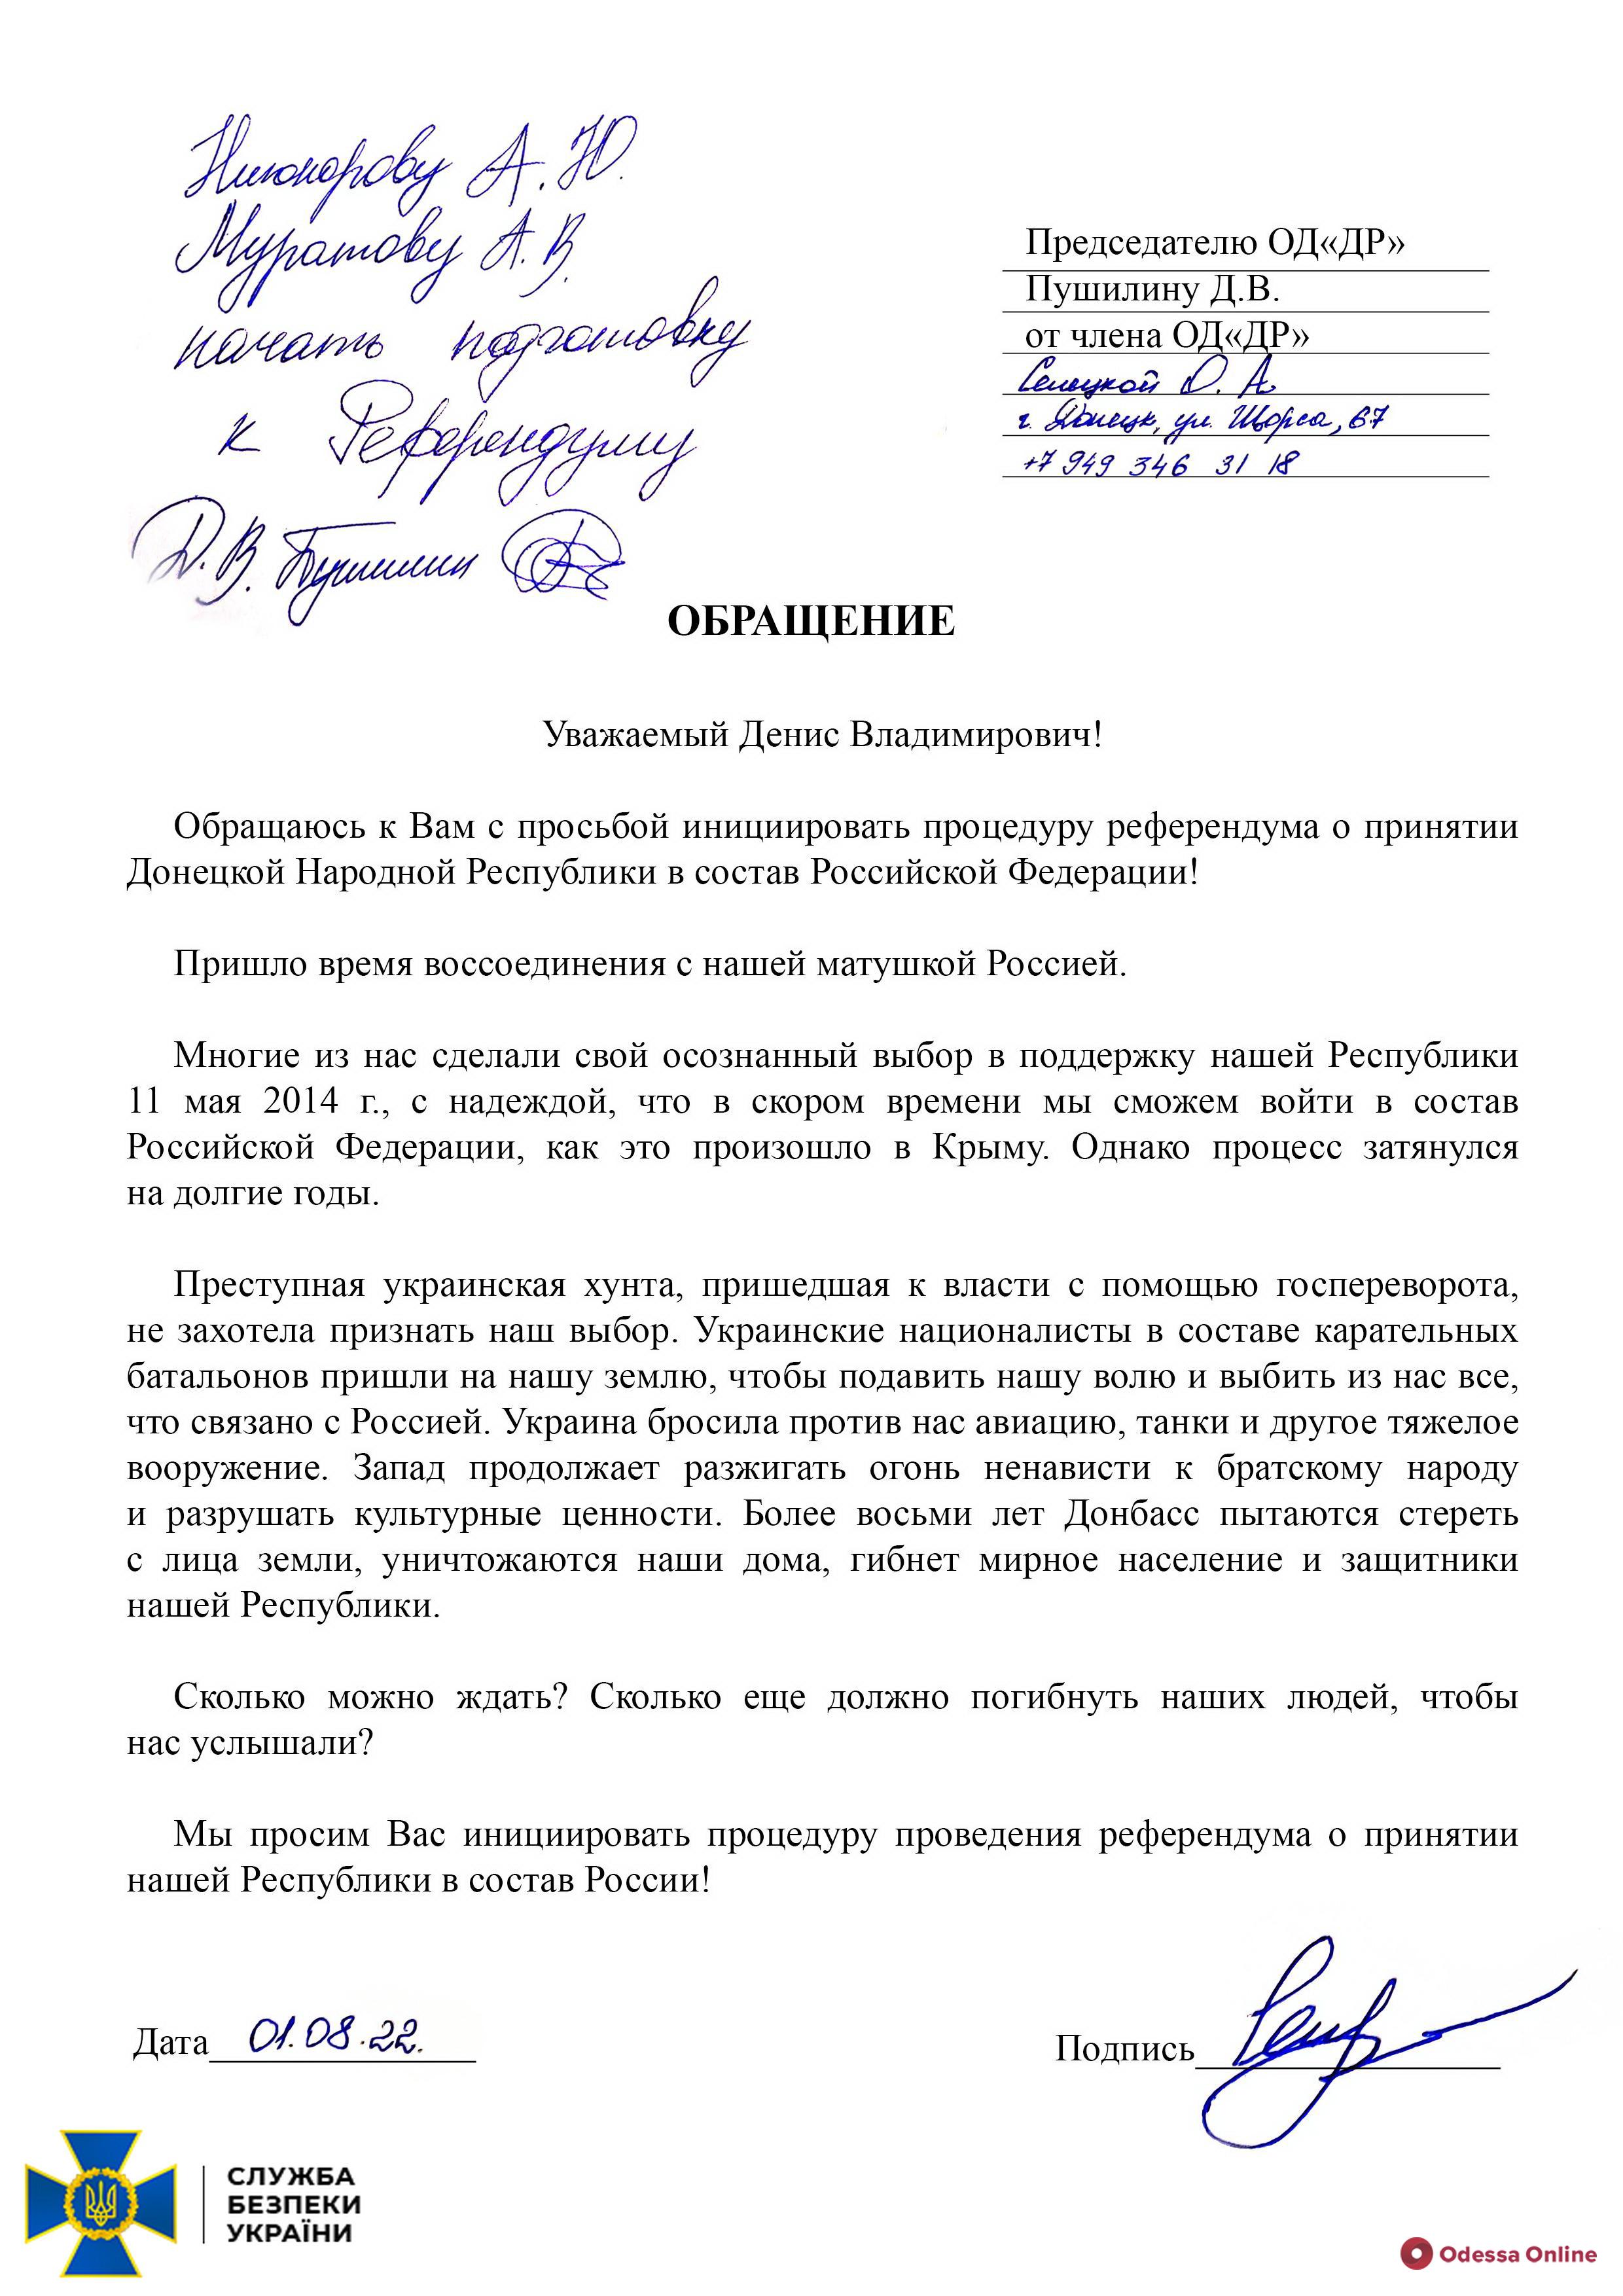 СБУ викрила плани рф щодо псевдореферендуму з приєднання окупованих регіонів України